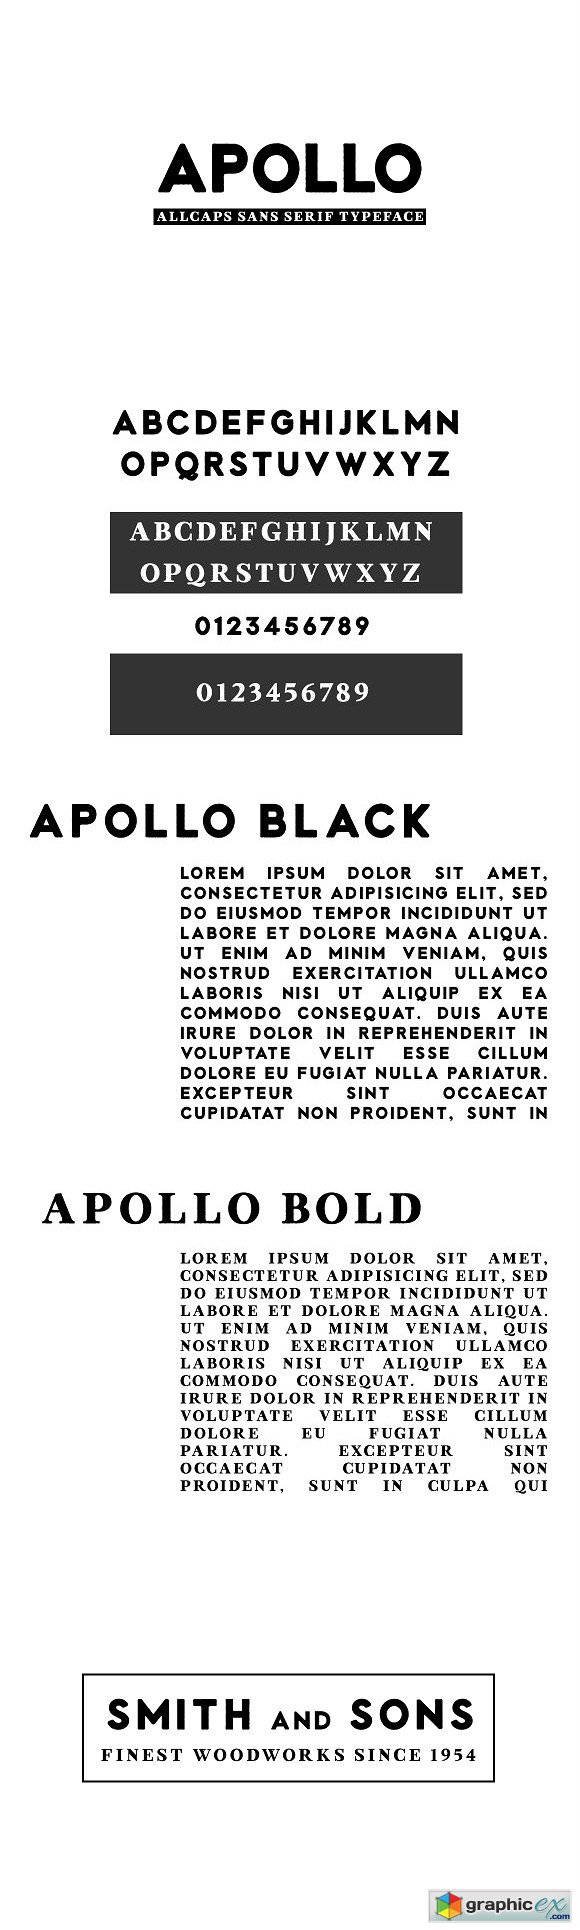 Apollo Fonts Sans Serif